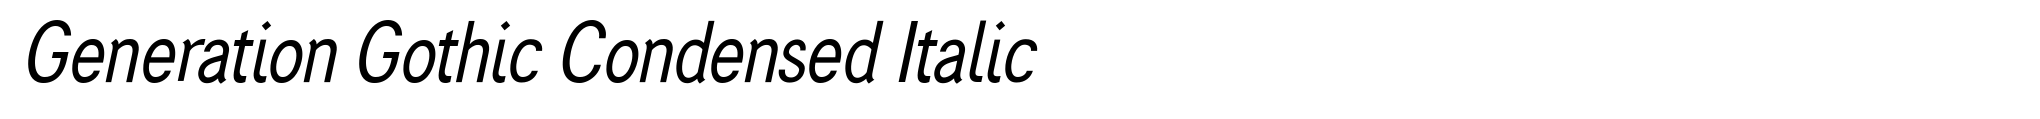 Generation Gothic Condensed Italic image